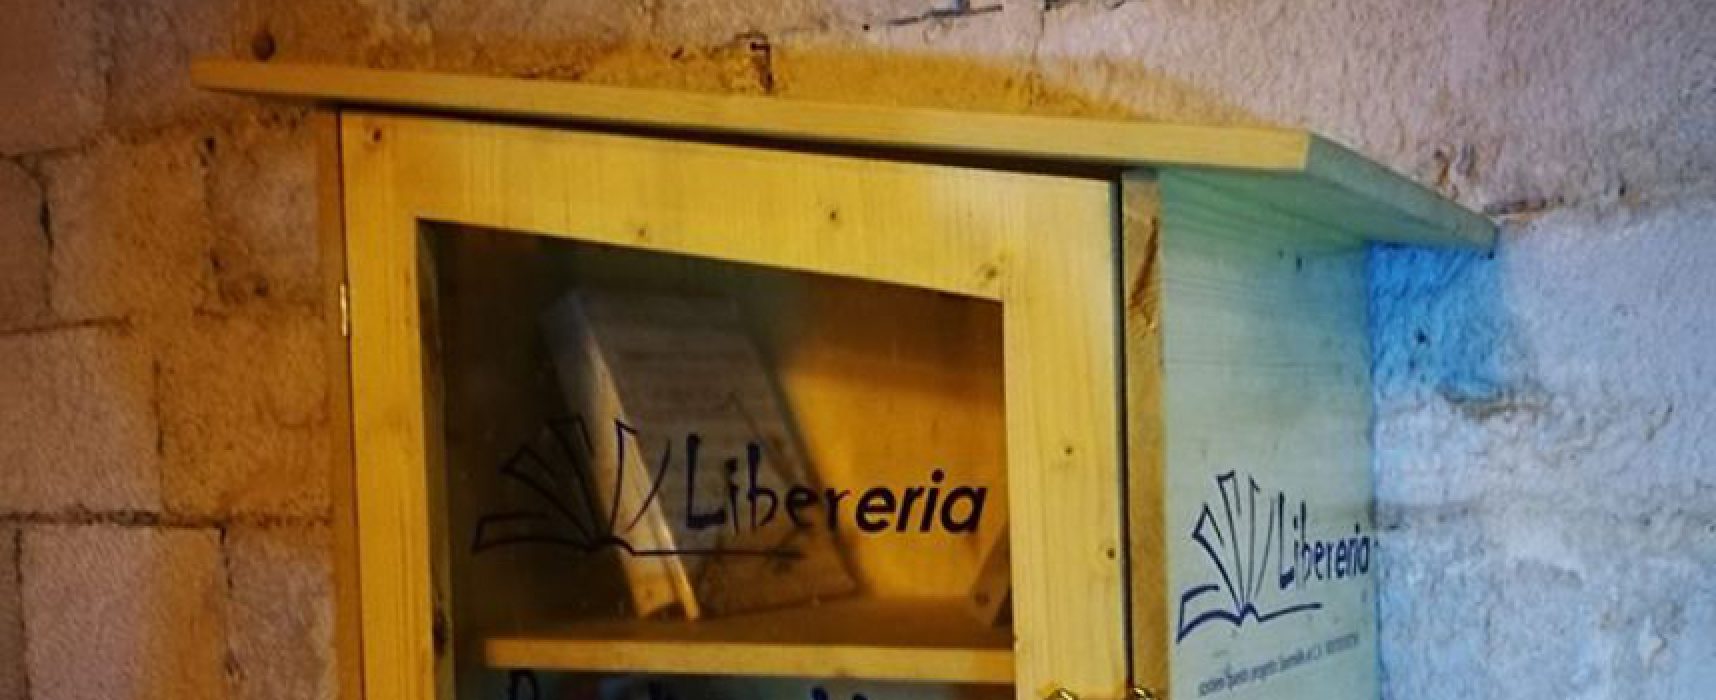 Nasce “Libereria”, iniziativa di bookcrossing a cura dell’associazione Schára Onlus